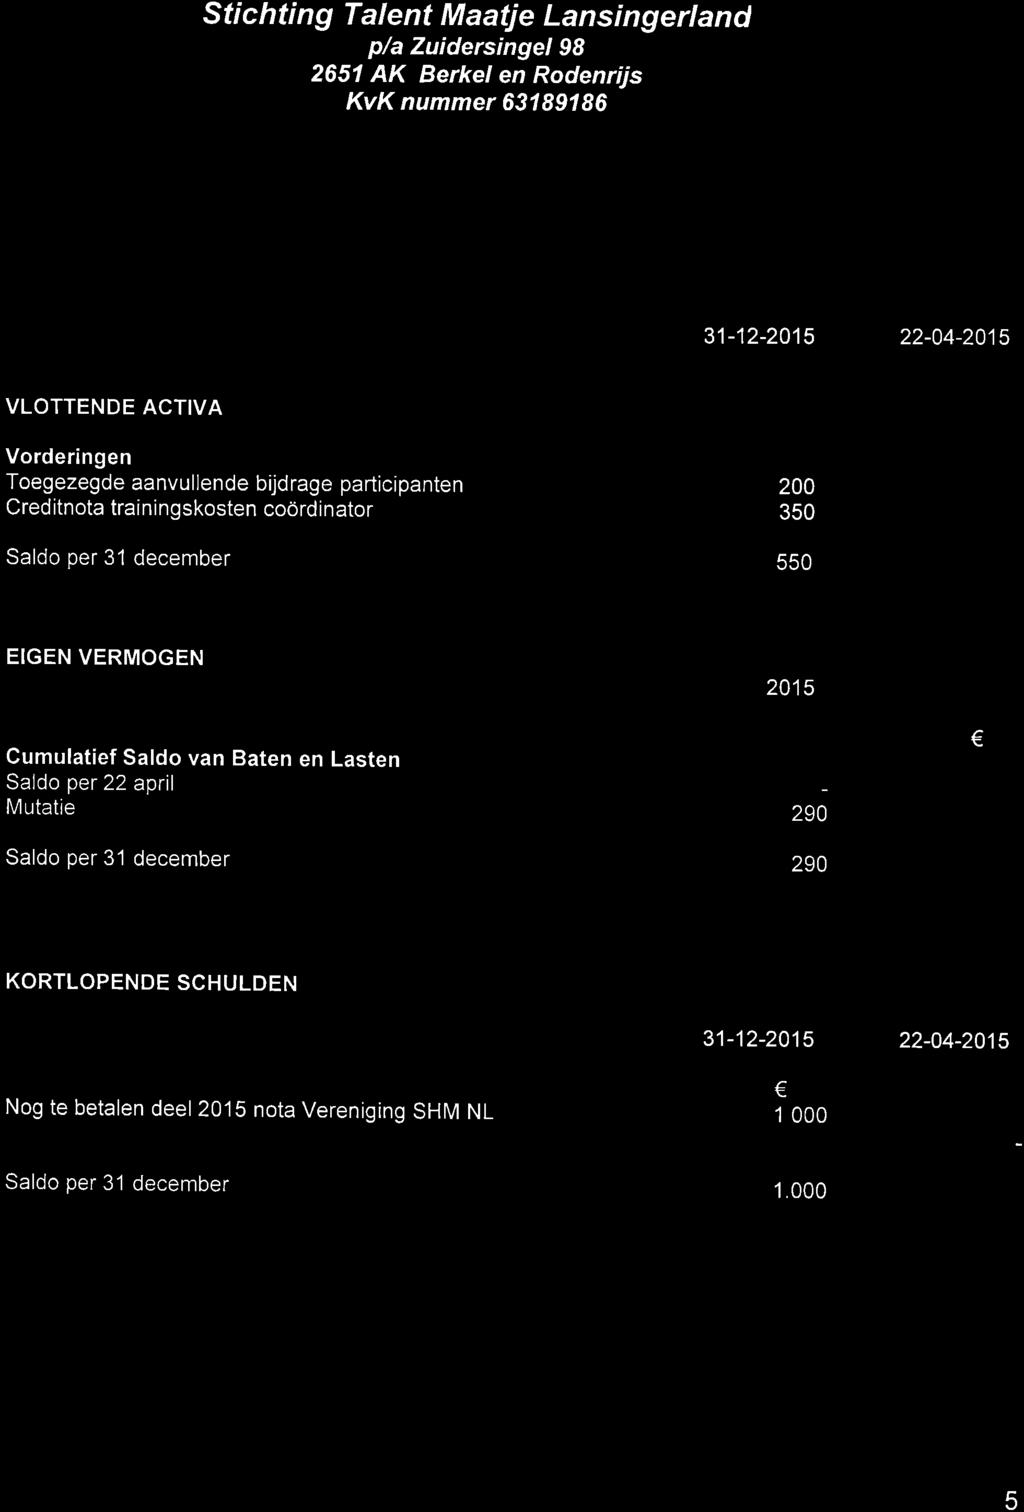 Stichti ng Talent Maatje Lansi ngerland p/a Zuidersingel g8 TOELICHTING OP DE BALANS PER 3í DECEMBER 2015 31-12-2015 22-04-2015 VLOTTENDE ACTIVA Vorderingen Toegezegde aanvullende bijdrage